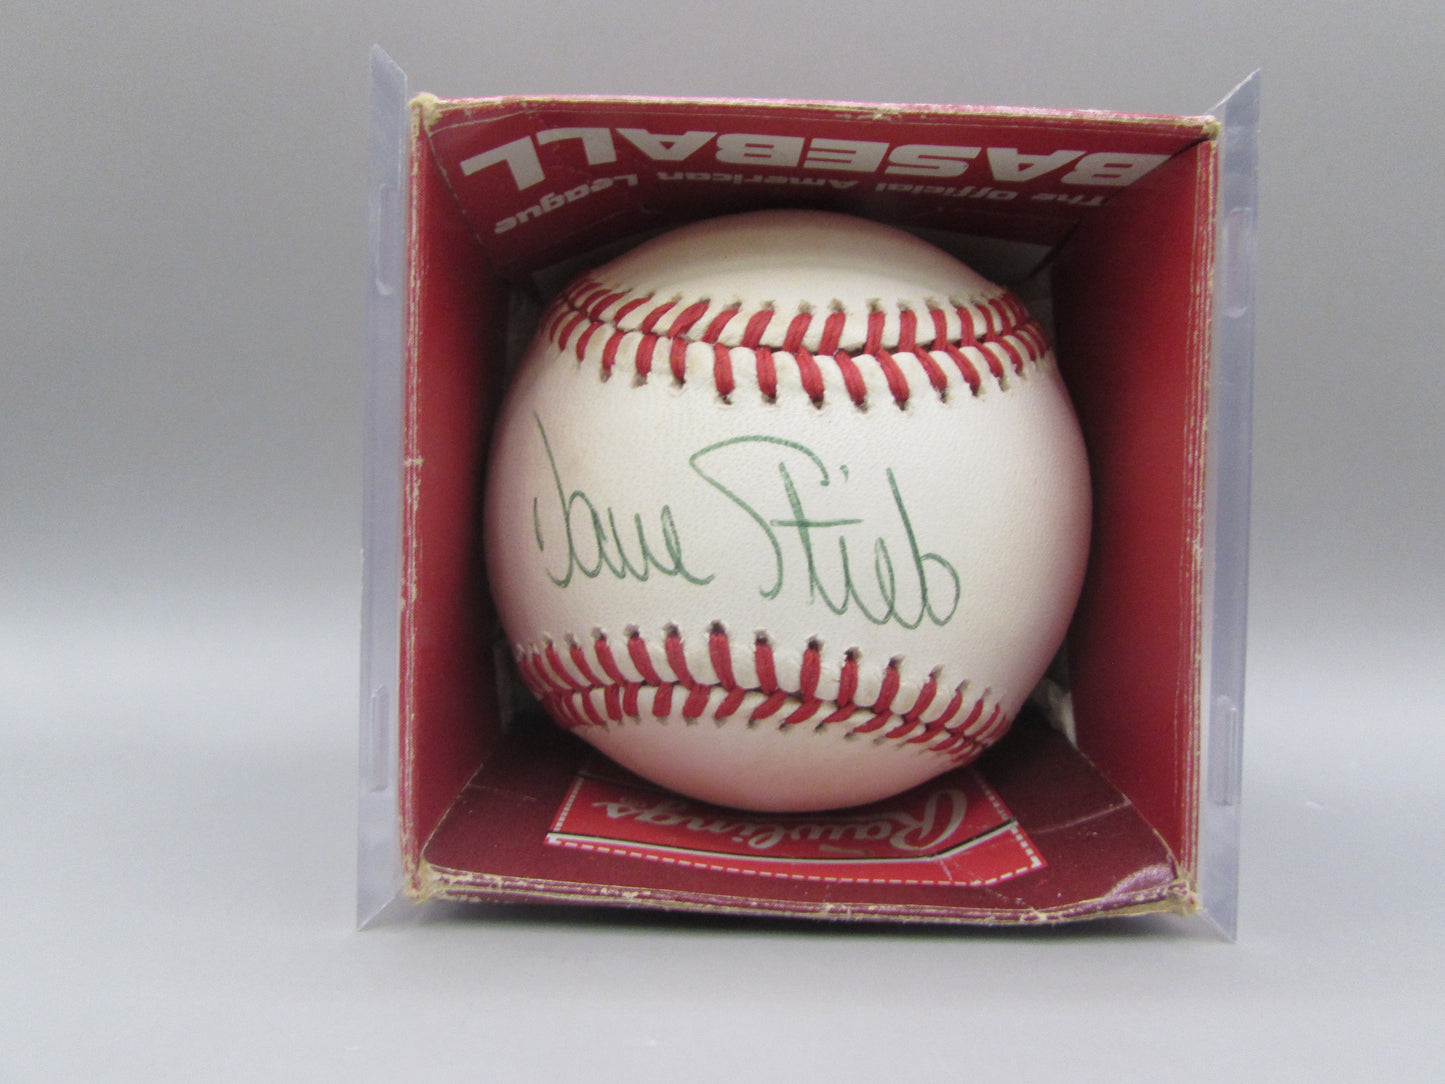 Dave Steib signed baseball